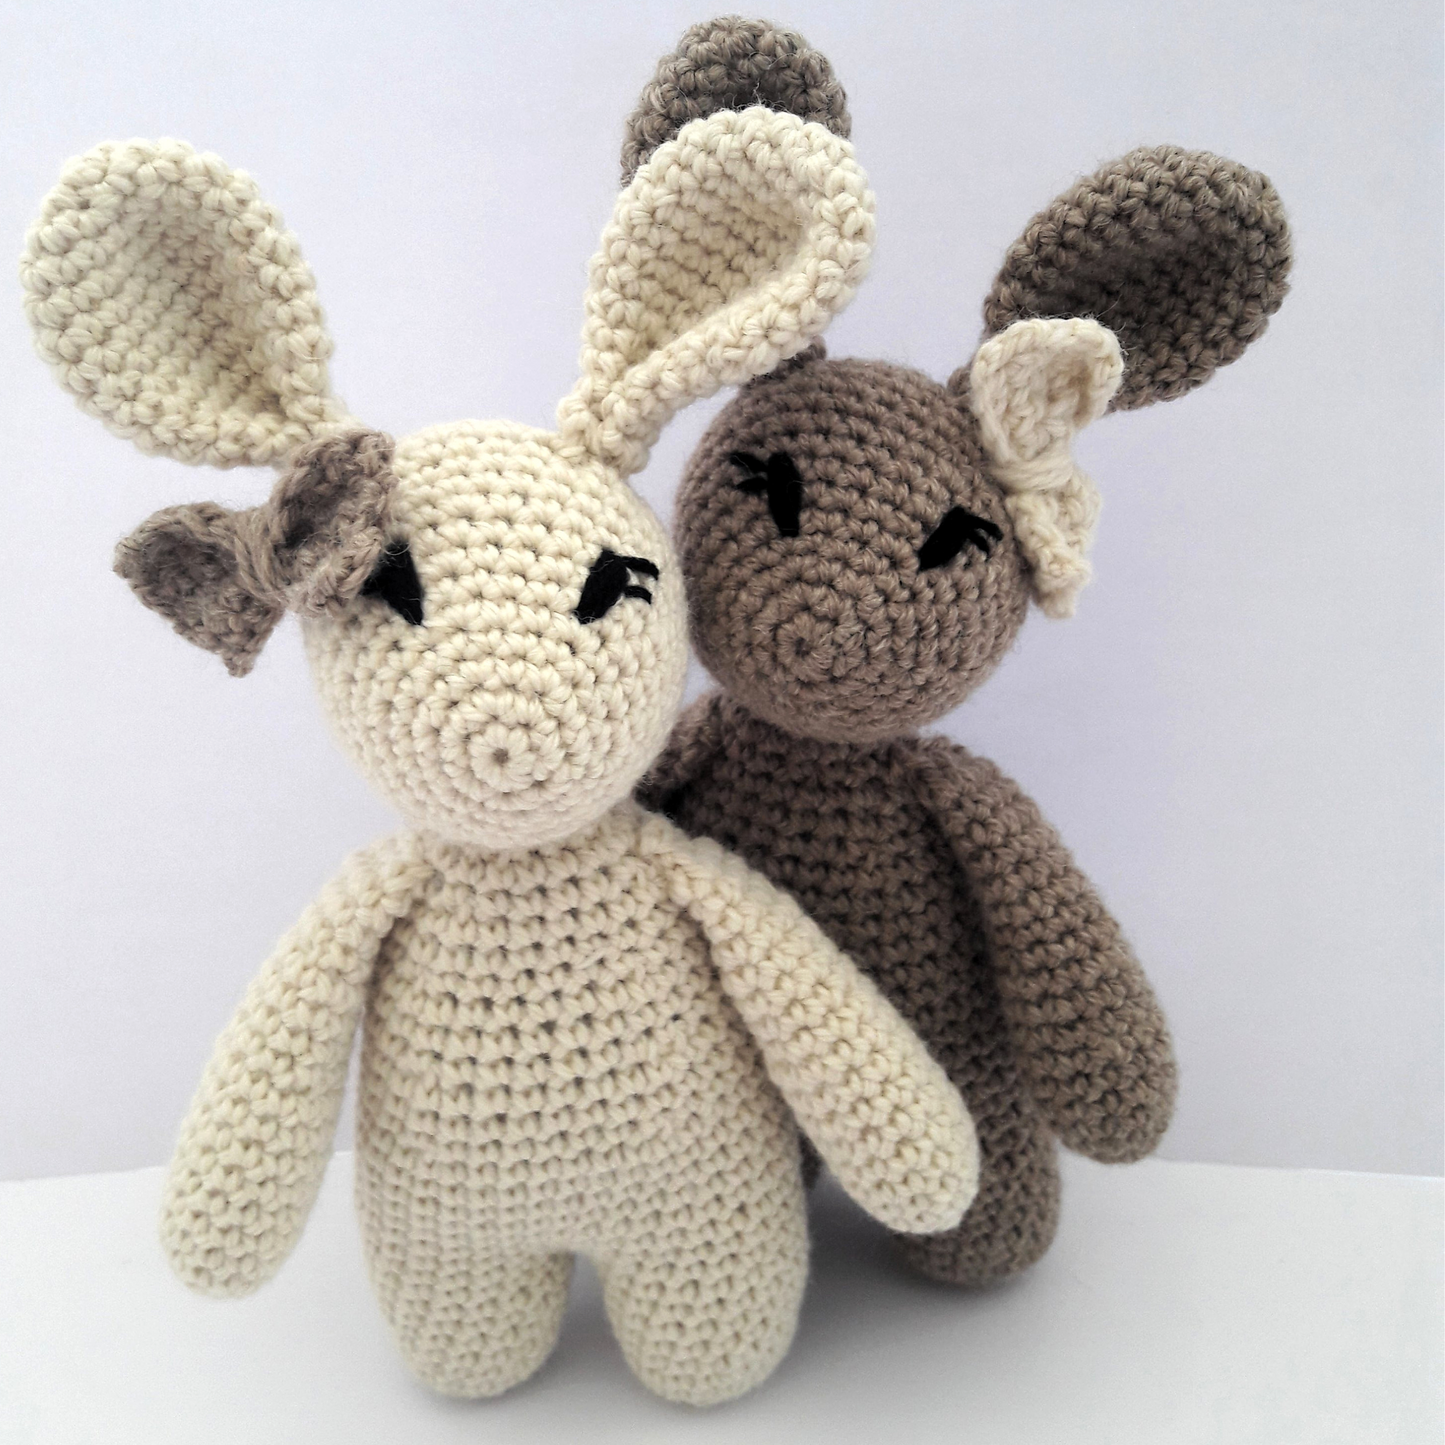 2 x Alpaca Crochet Rabbits